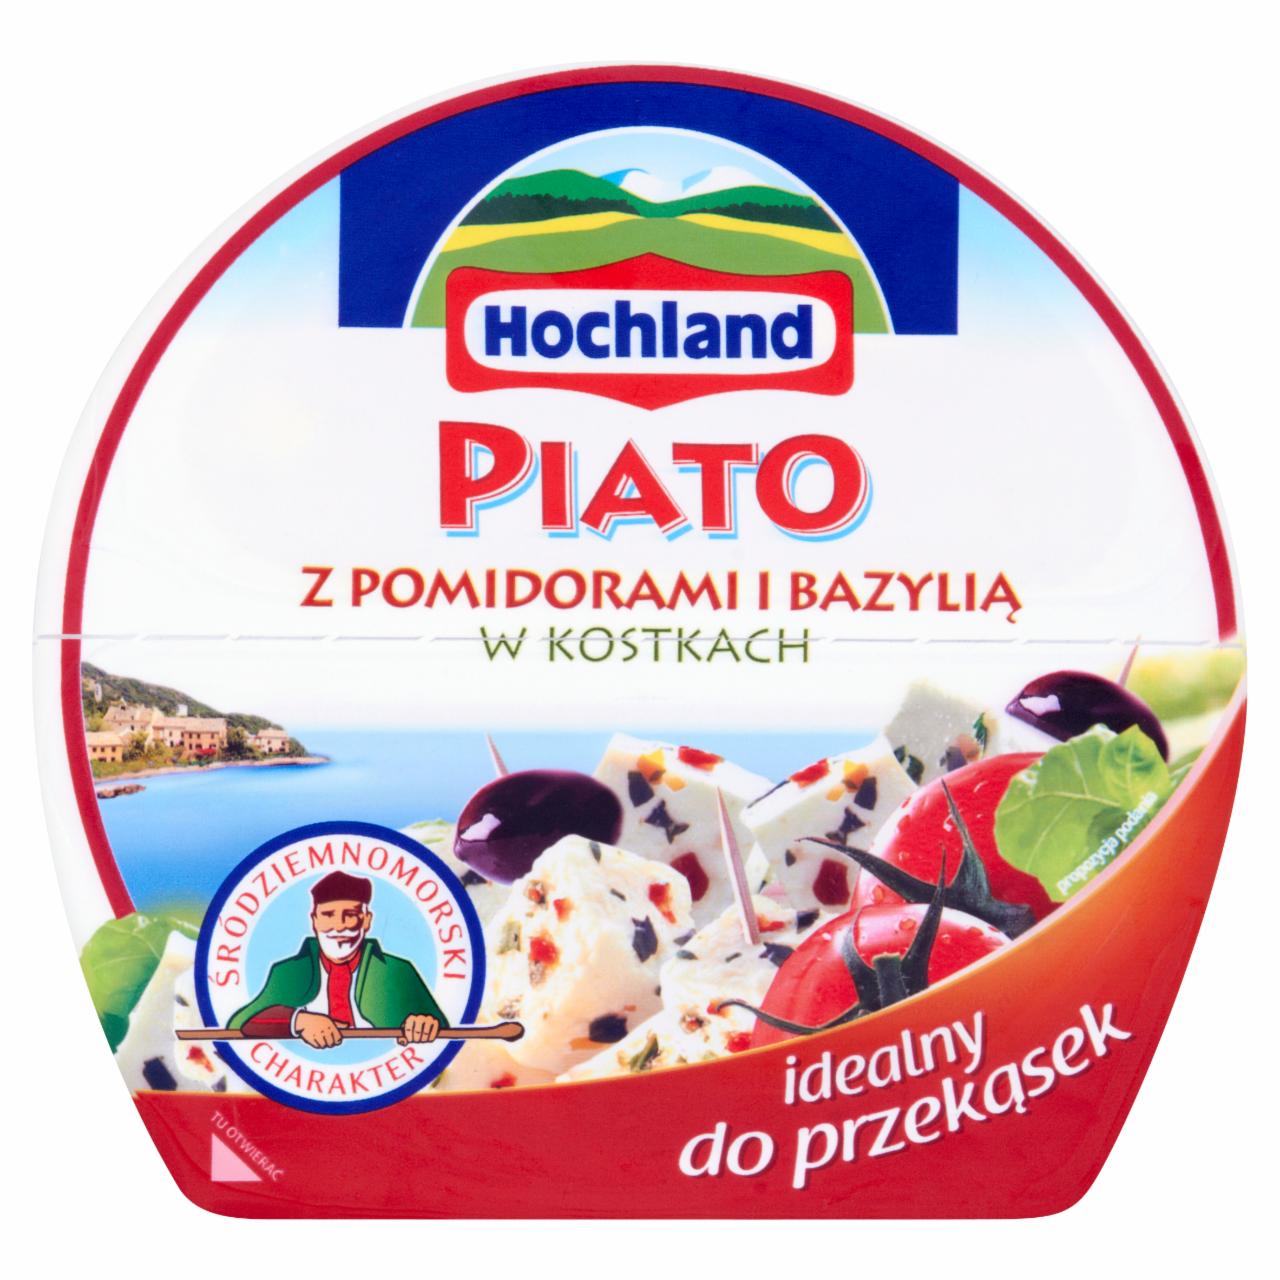 Zdjęcia - Hochland Piato z pomidorami i bazylią w kostkach Ser solankowy 150 g